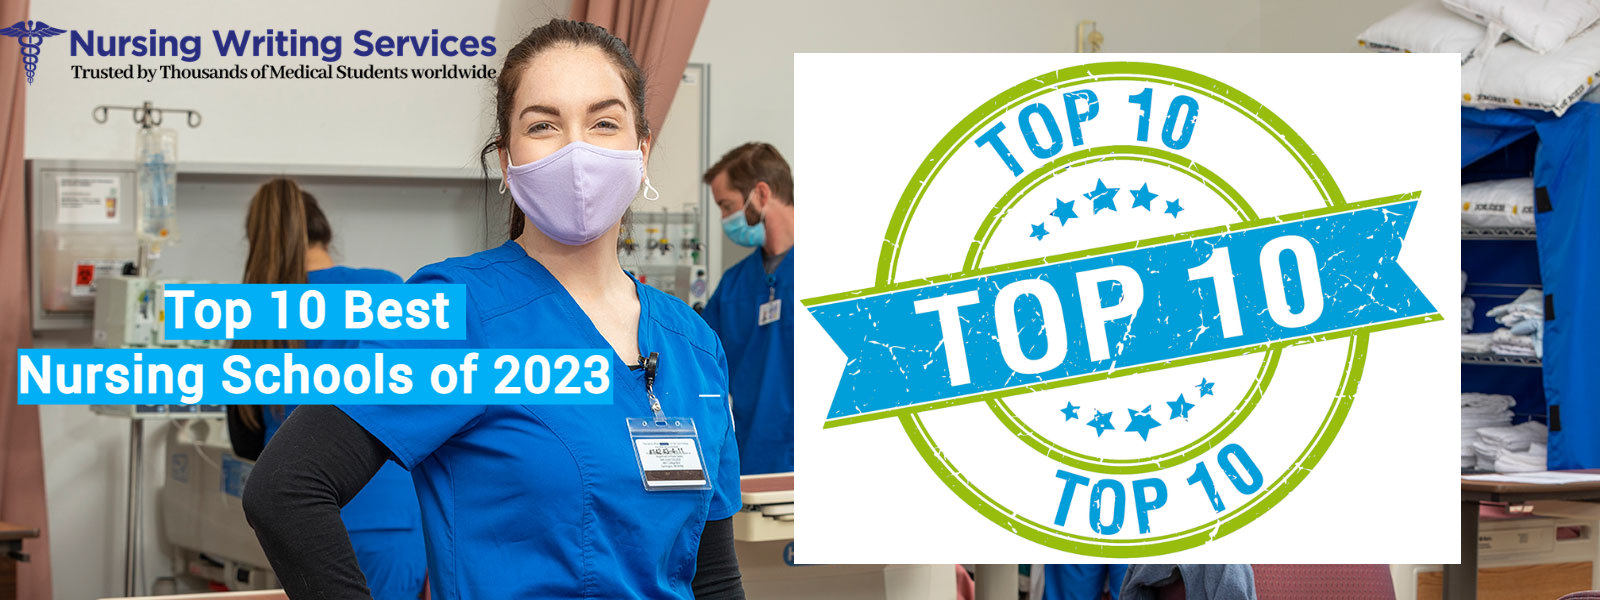 Top 10 Best Nursing Schools of 2023